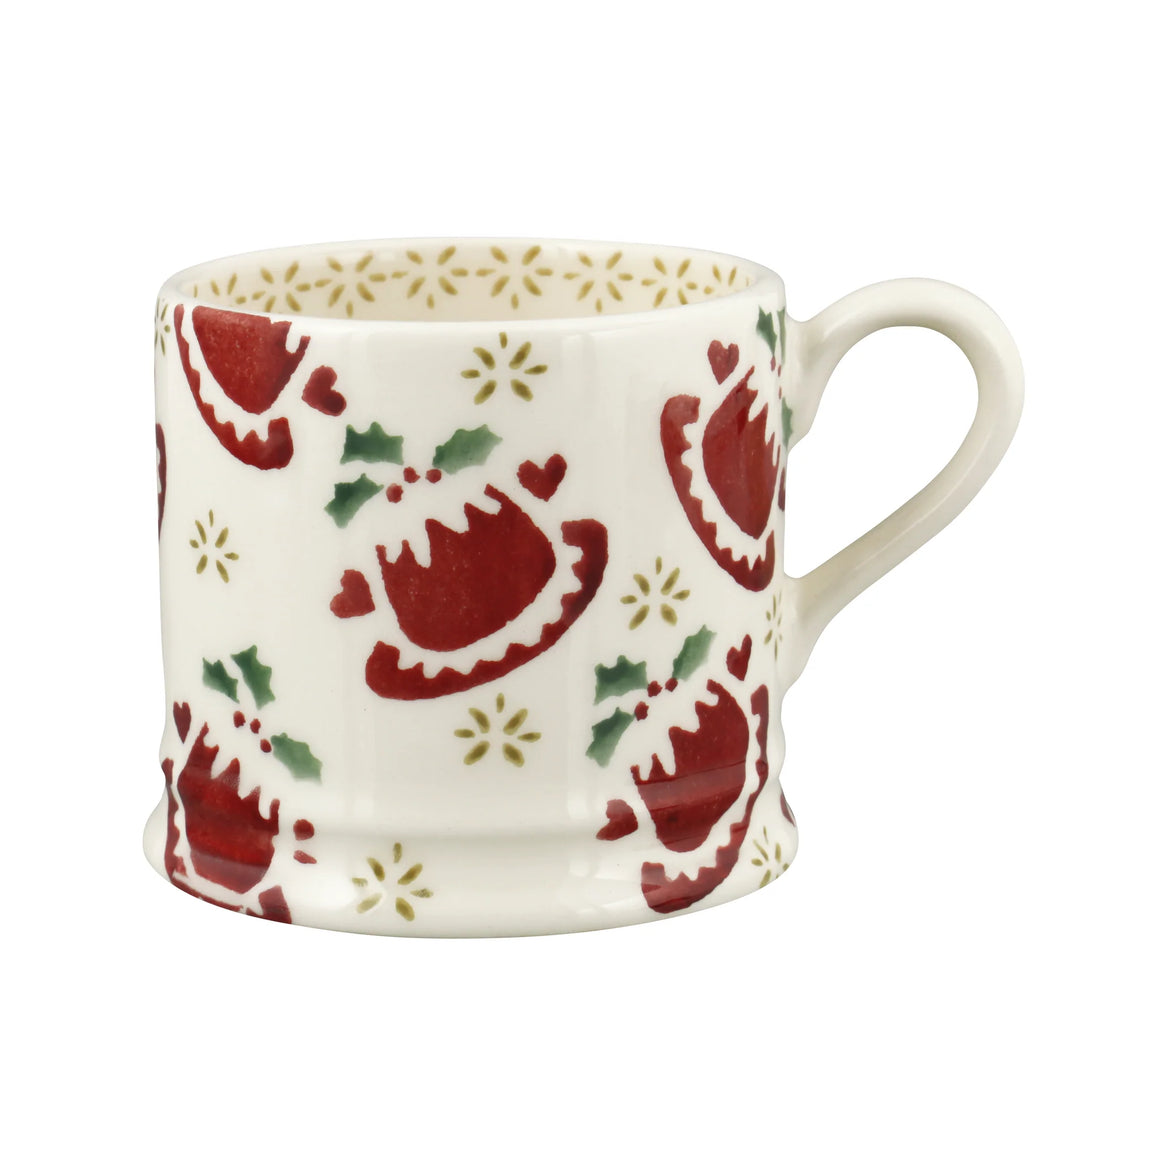 Emma Bridgewater Christmas Puddings Small Mug- Sale